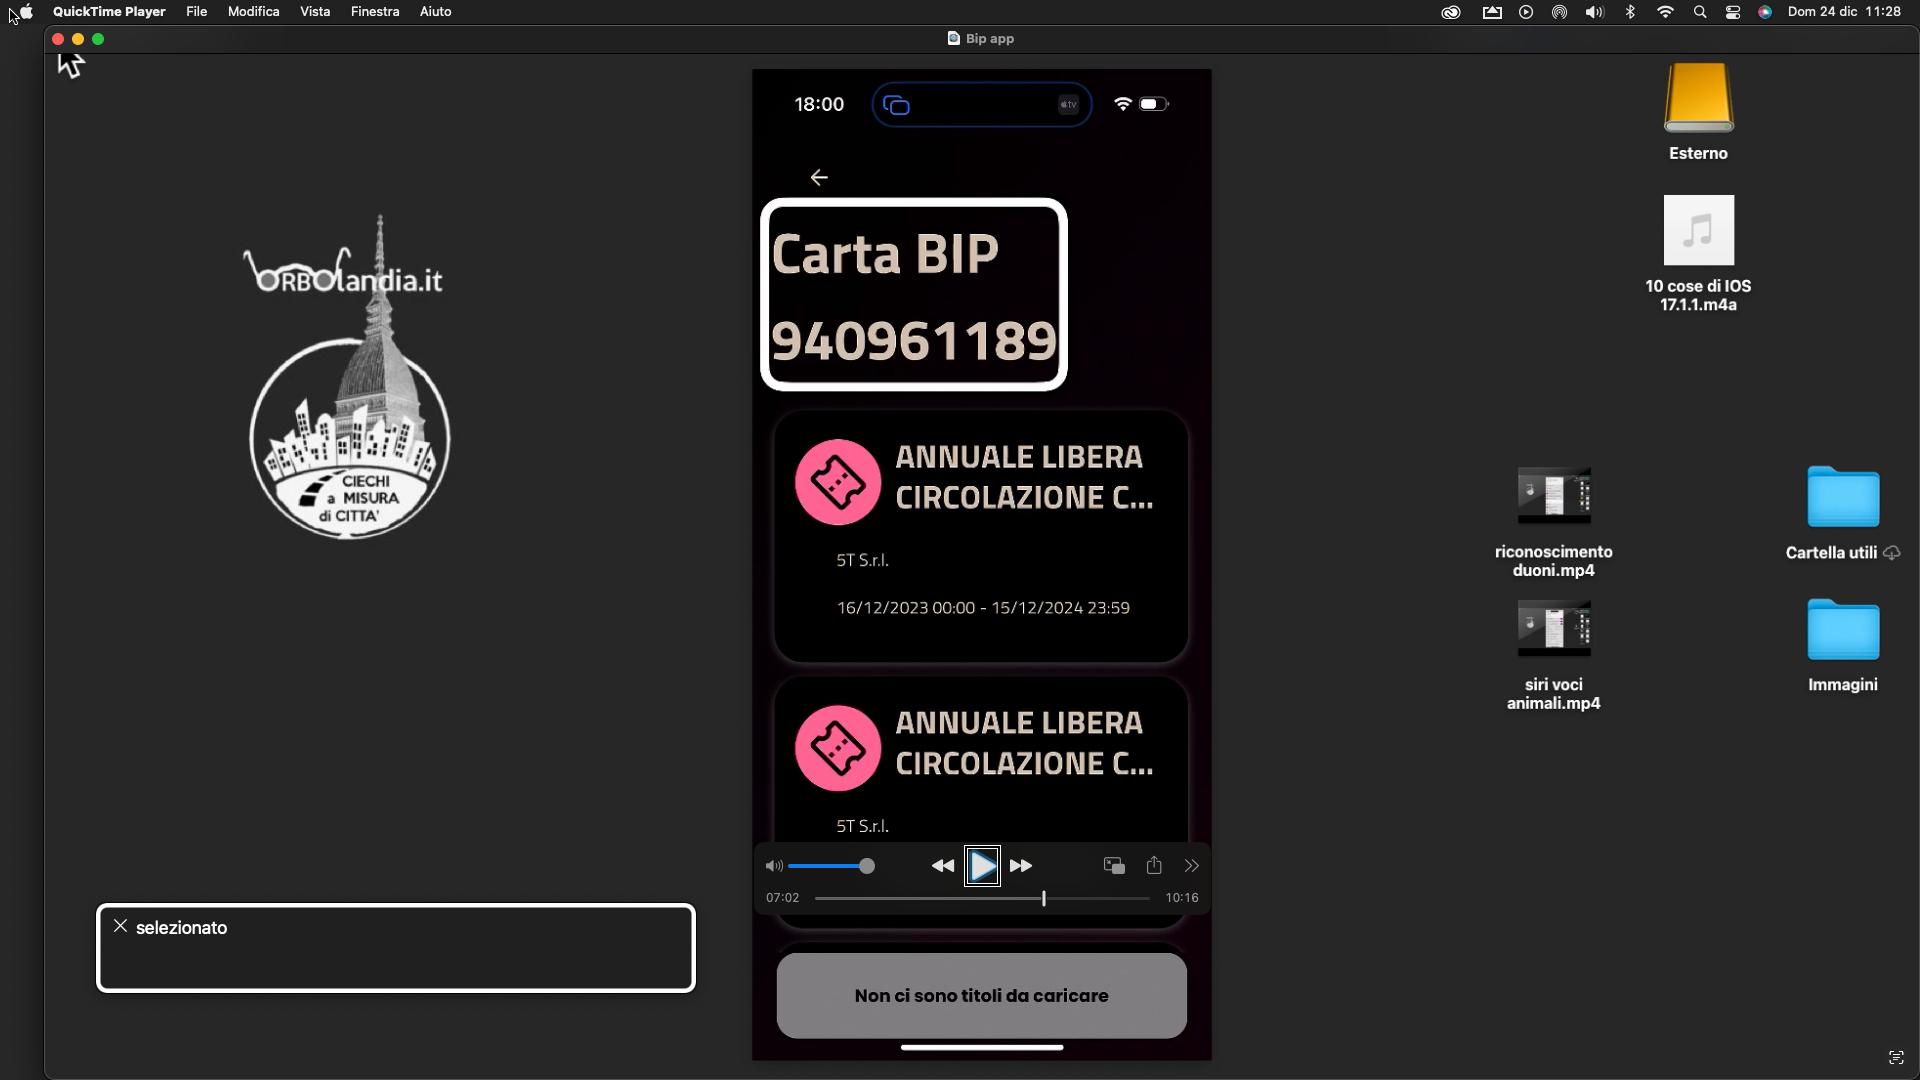 ne immagini uno screenshot dell’iPhone aperto sull’applicazione Bipapp